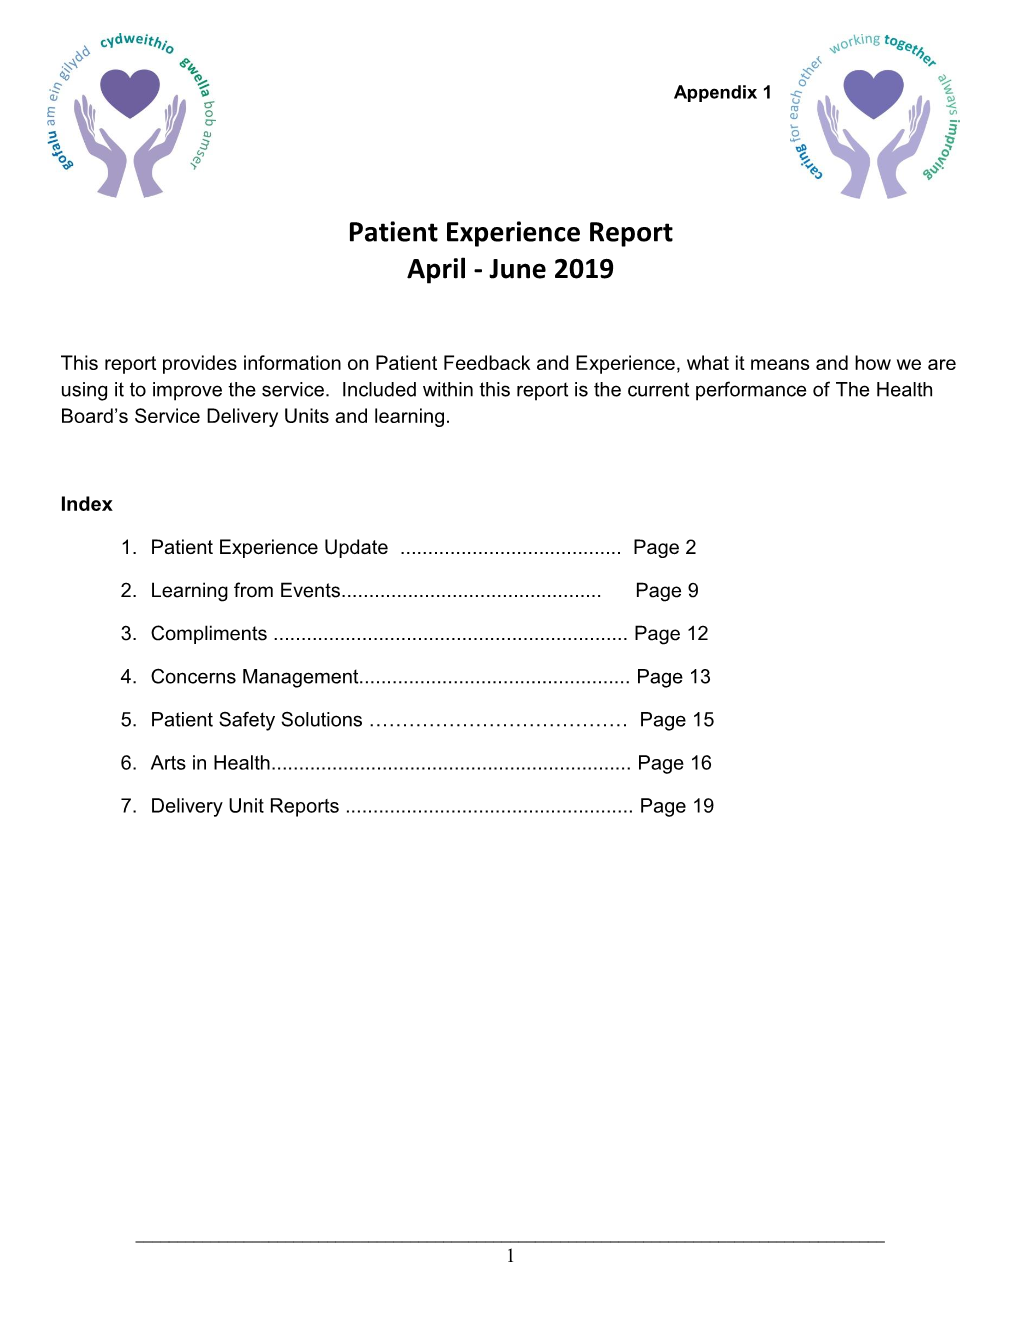 Patient Experience Report April - June 2019